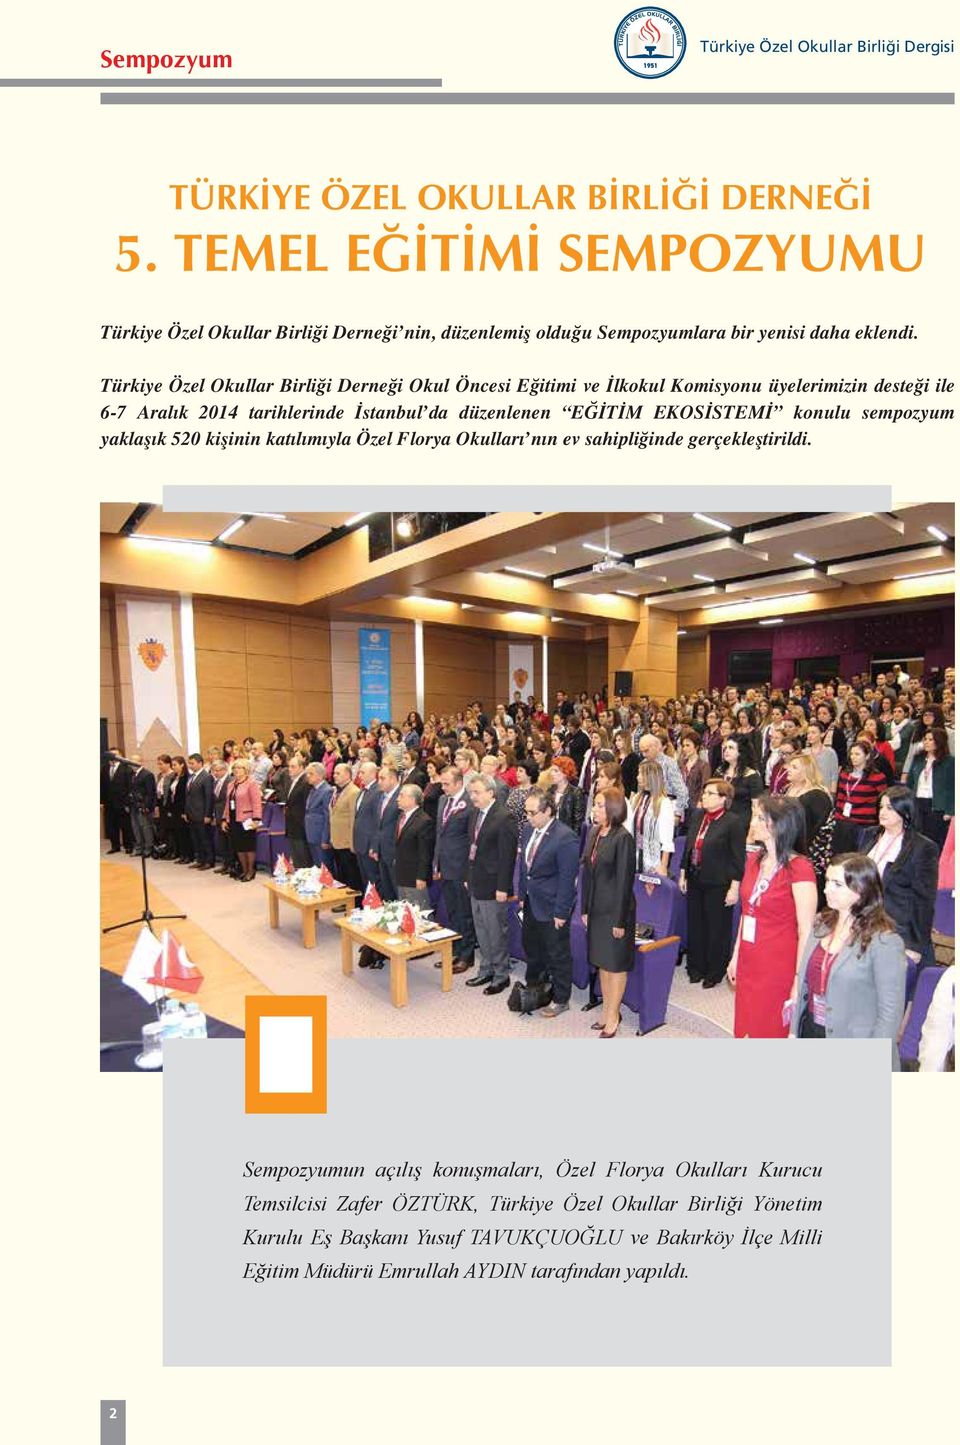 Türkiye Özel Okullar Birliği Derneği Okul Öncesi Eğitimi ve İlkokul Komisyonu üyelerimizin desteği ile 6-7 Aralık 2014 tarihlerinde İstanbul da düzenlenen EĞİTİM EKOSİSTEMİ konulu